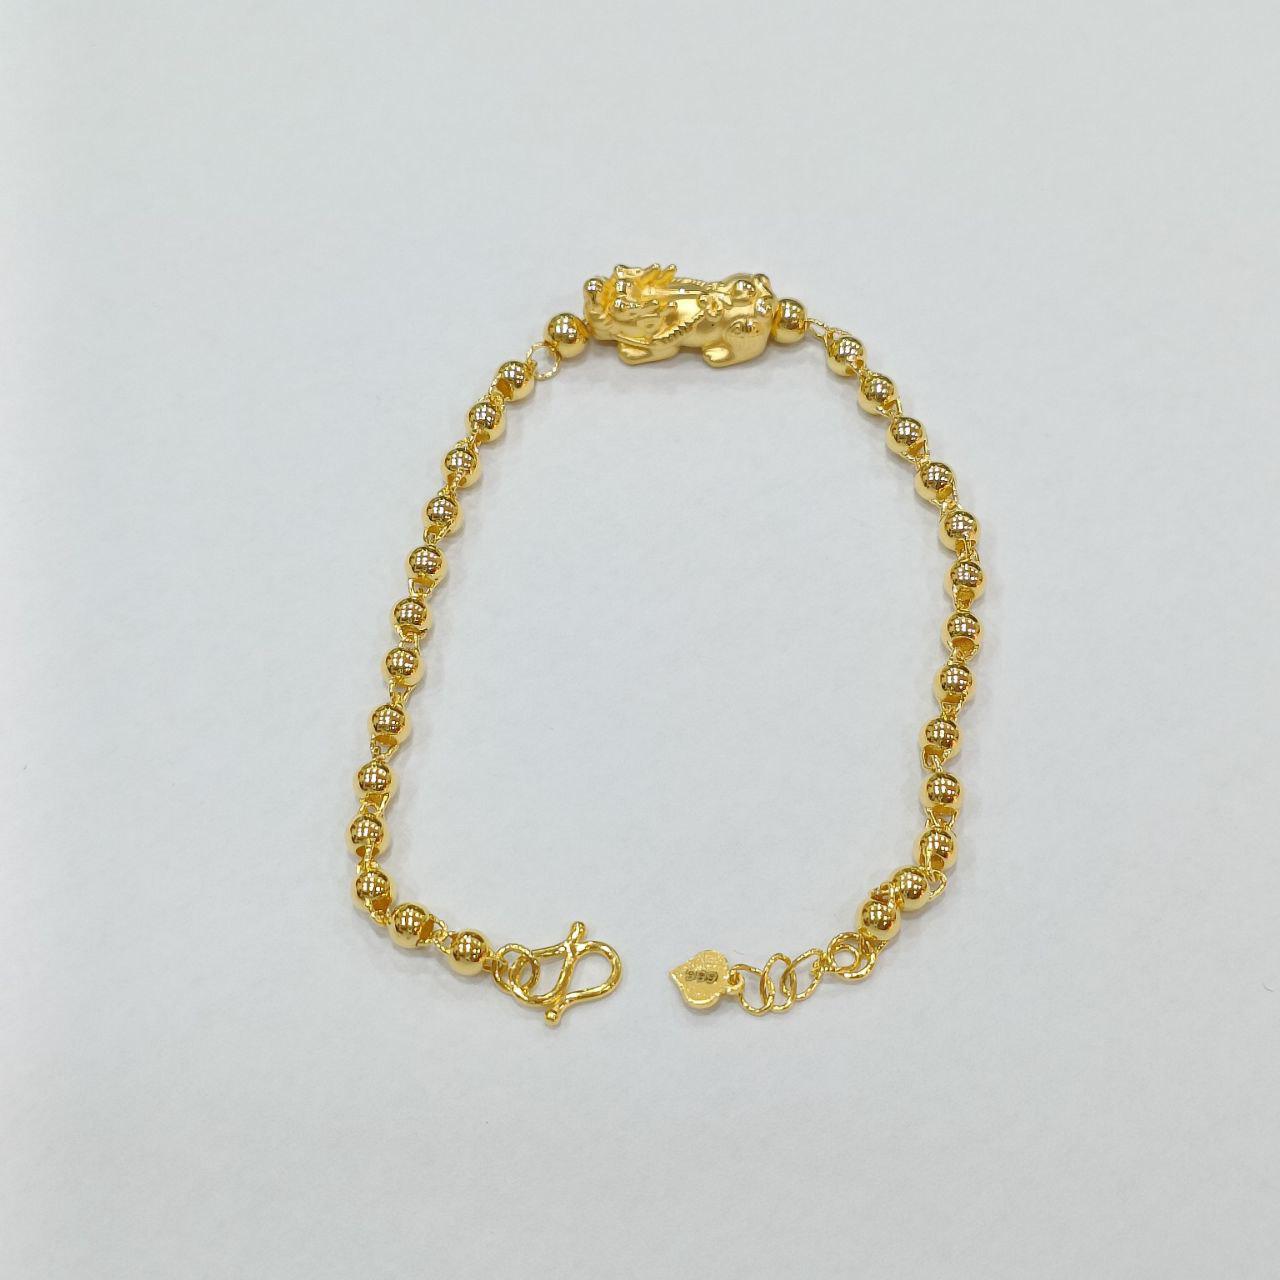 24k / 999 Gold Pixiu Ball Bracelet-999 gold-Best Gold Shop